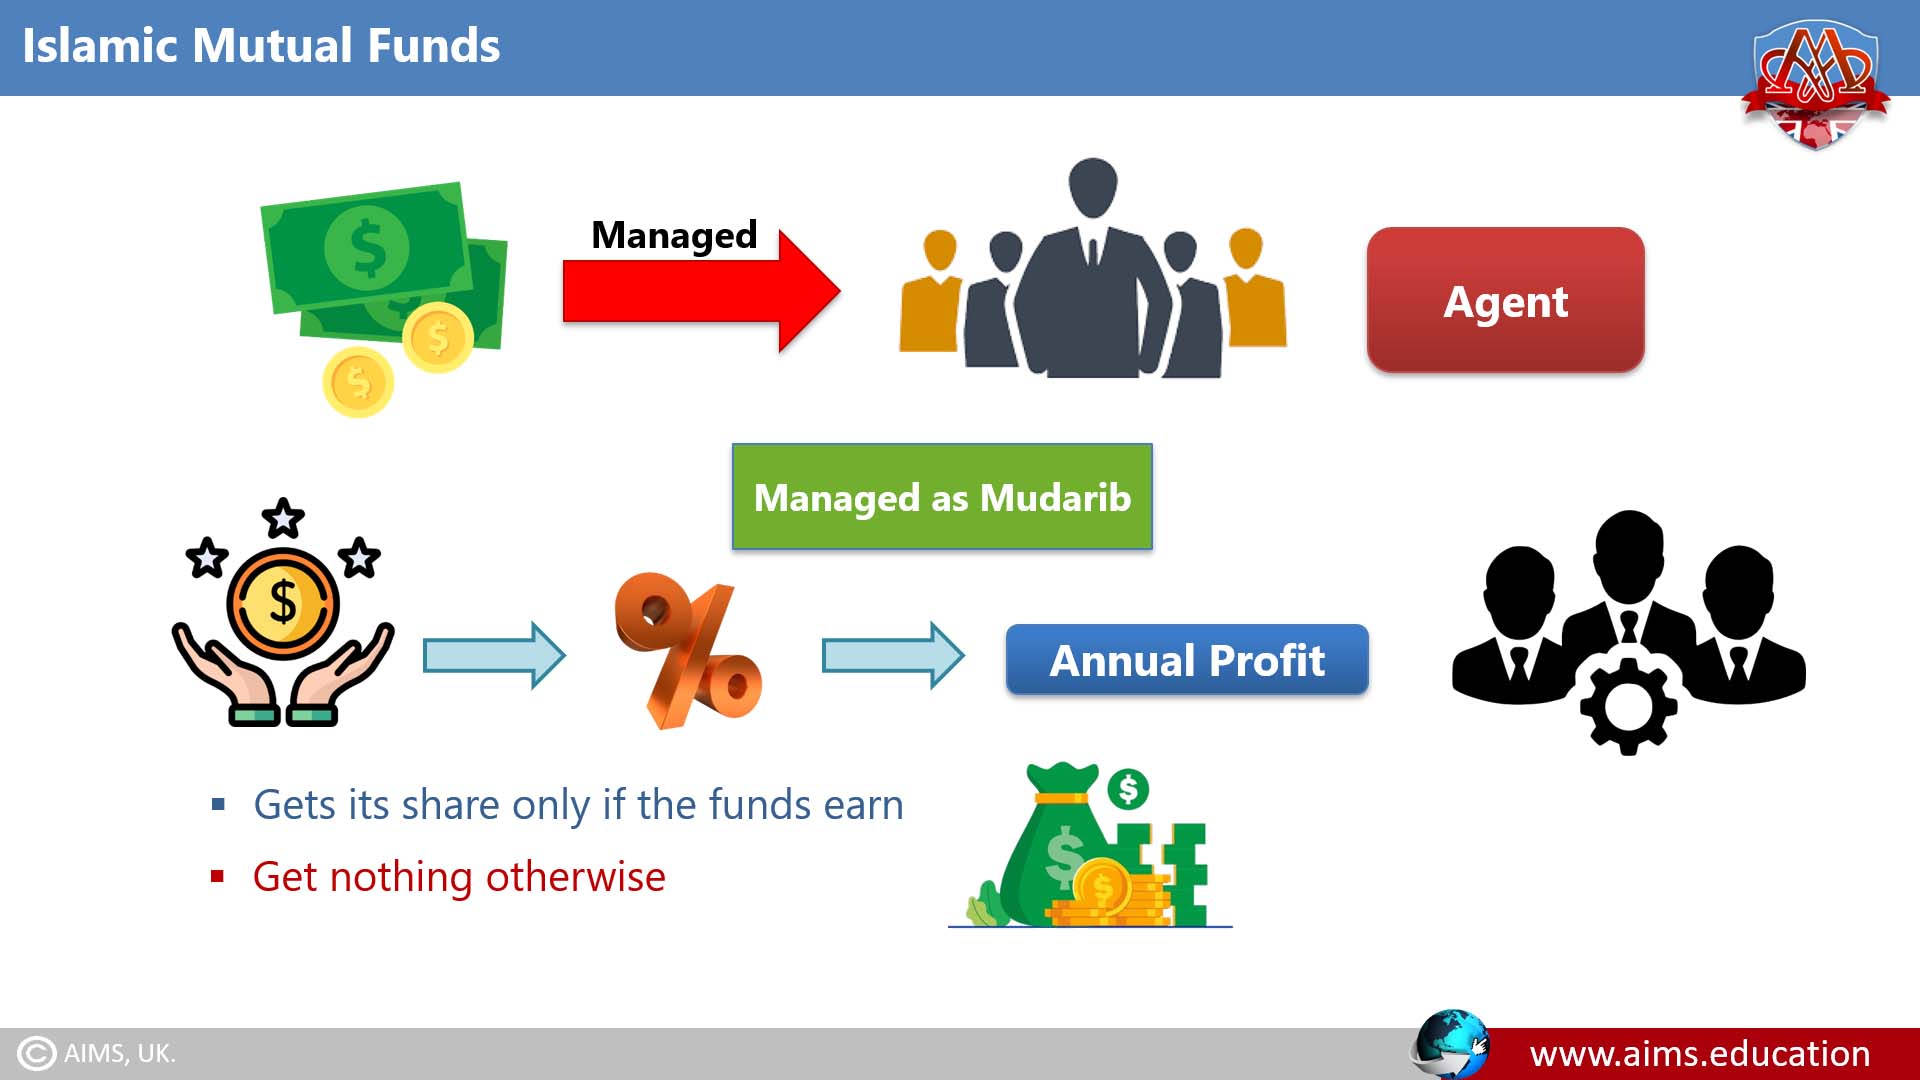 Islamic mutual funds